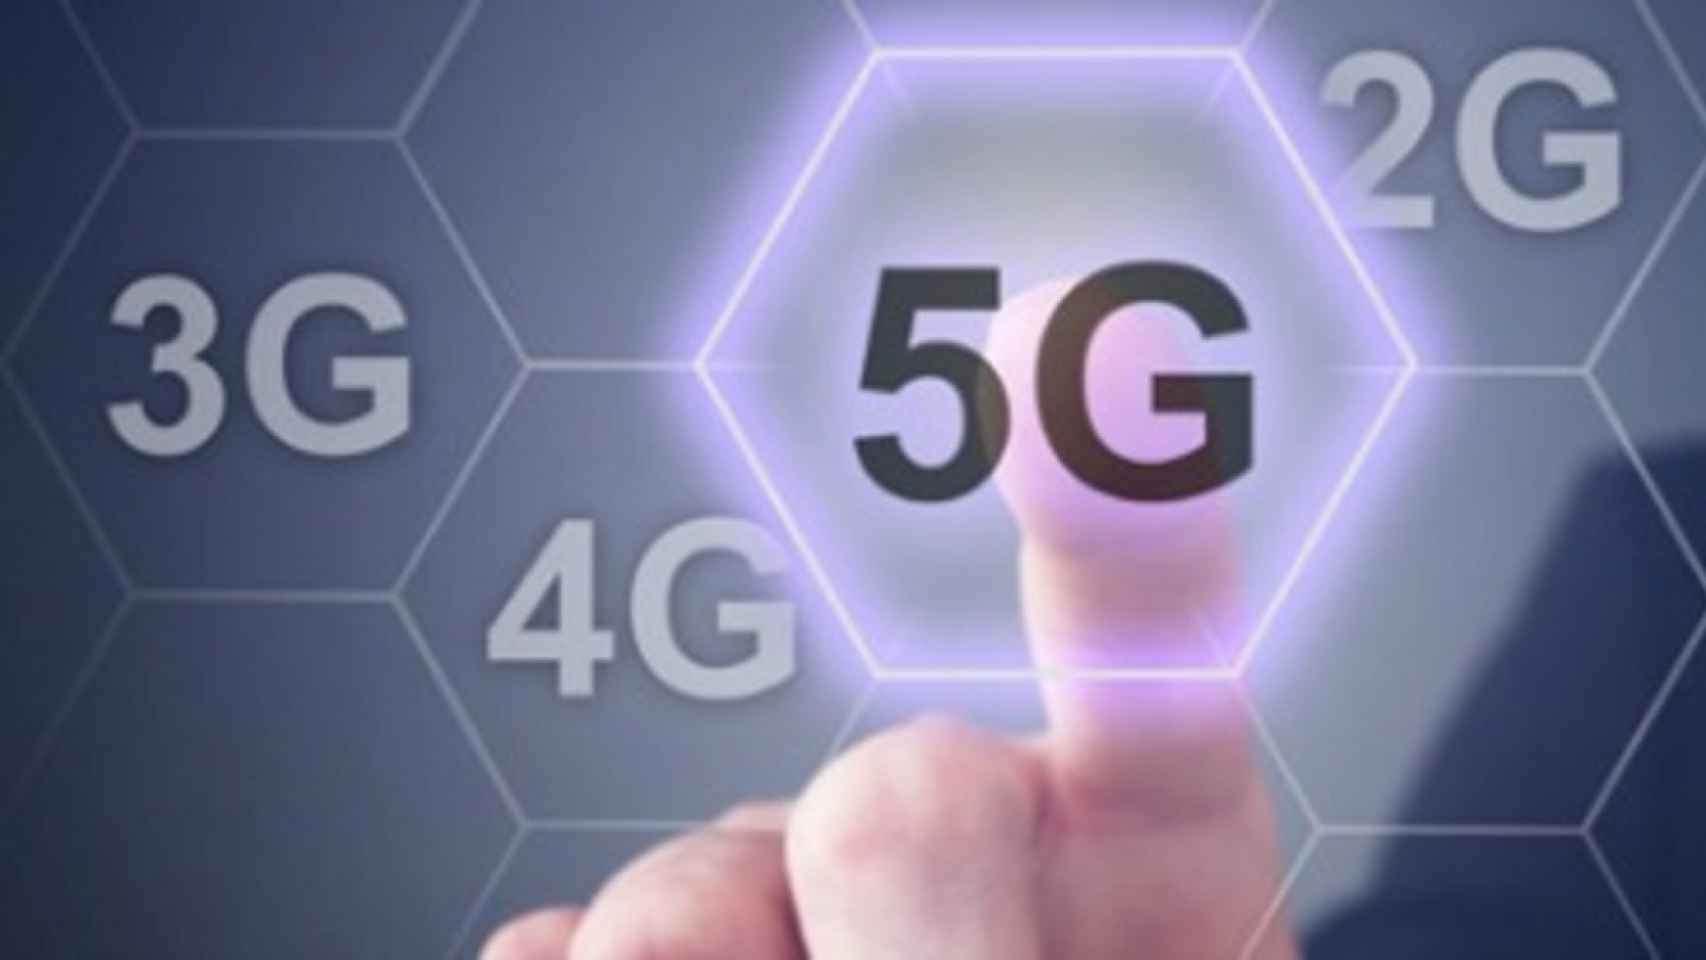 La actualidad tecnológica: Telefónica lidera el camino al 5G con despliegues en dos ciudades españolas